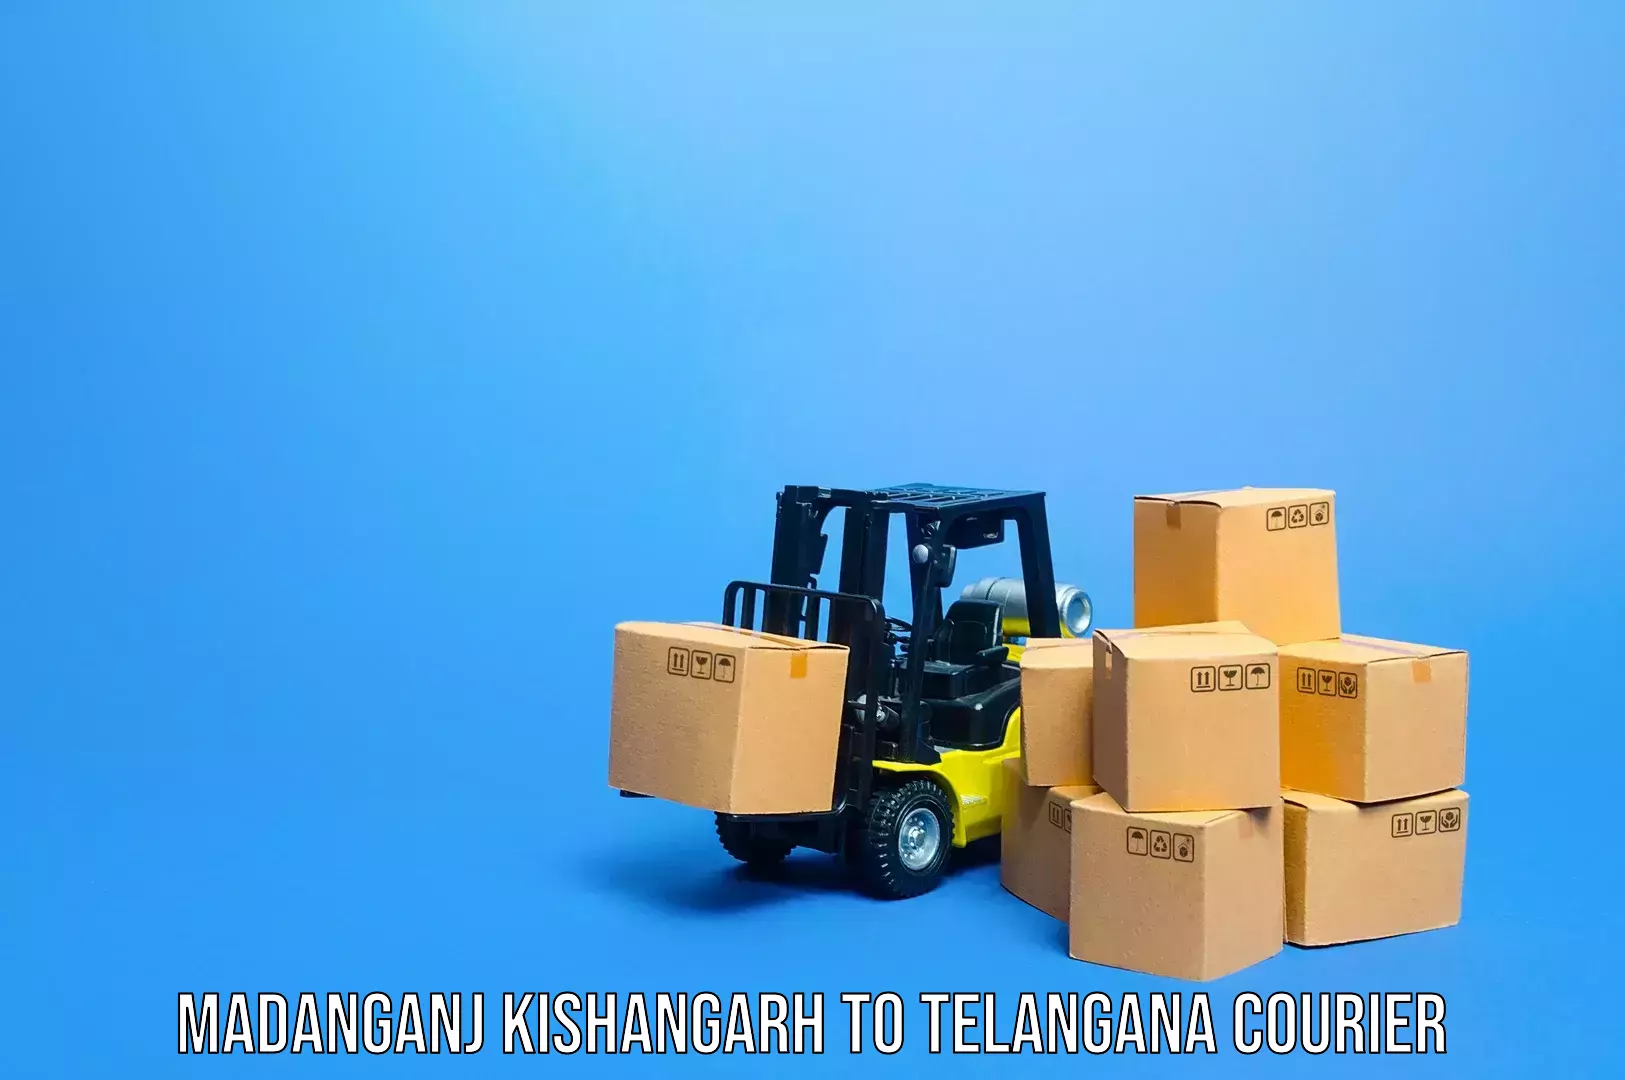 Baggage transport scheduler Madanganj Kishangarh to Mahabubnagar